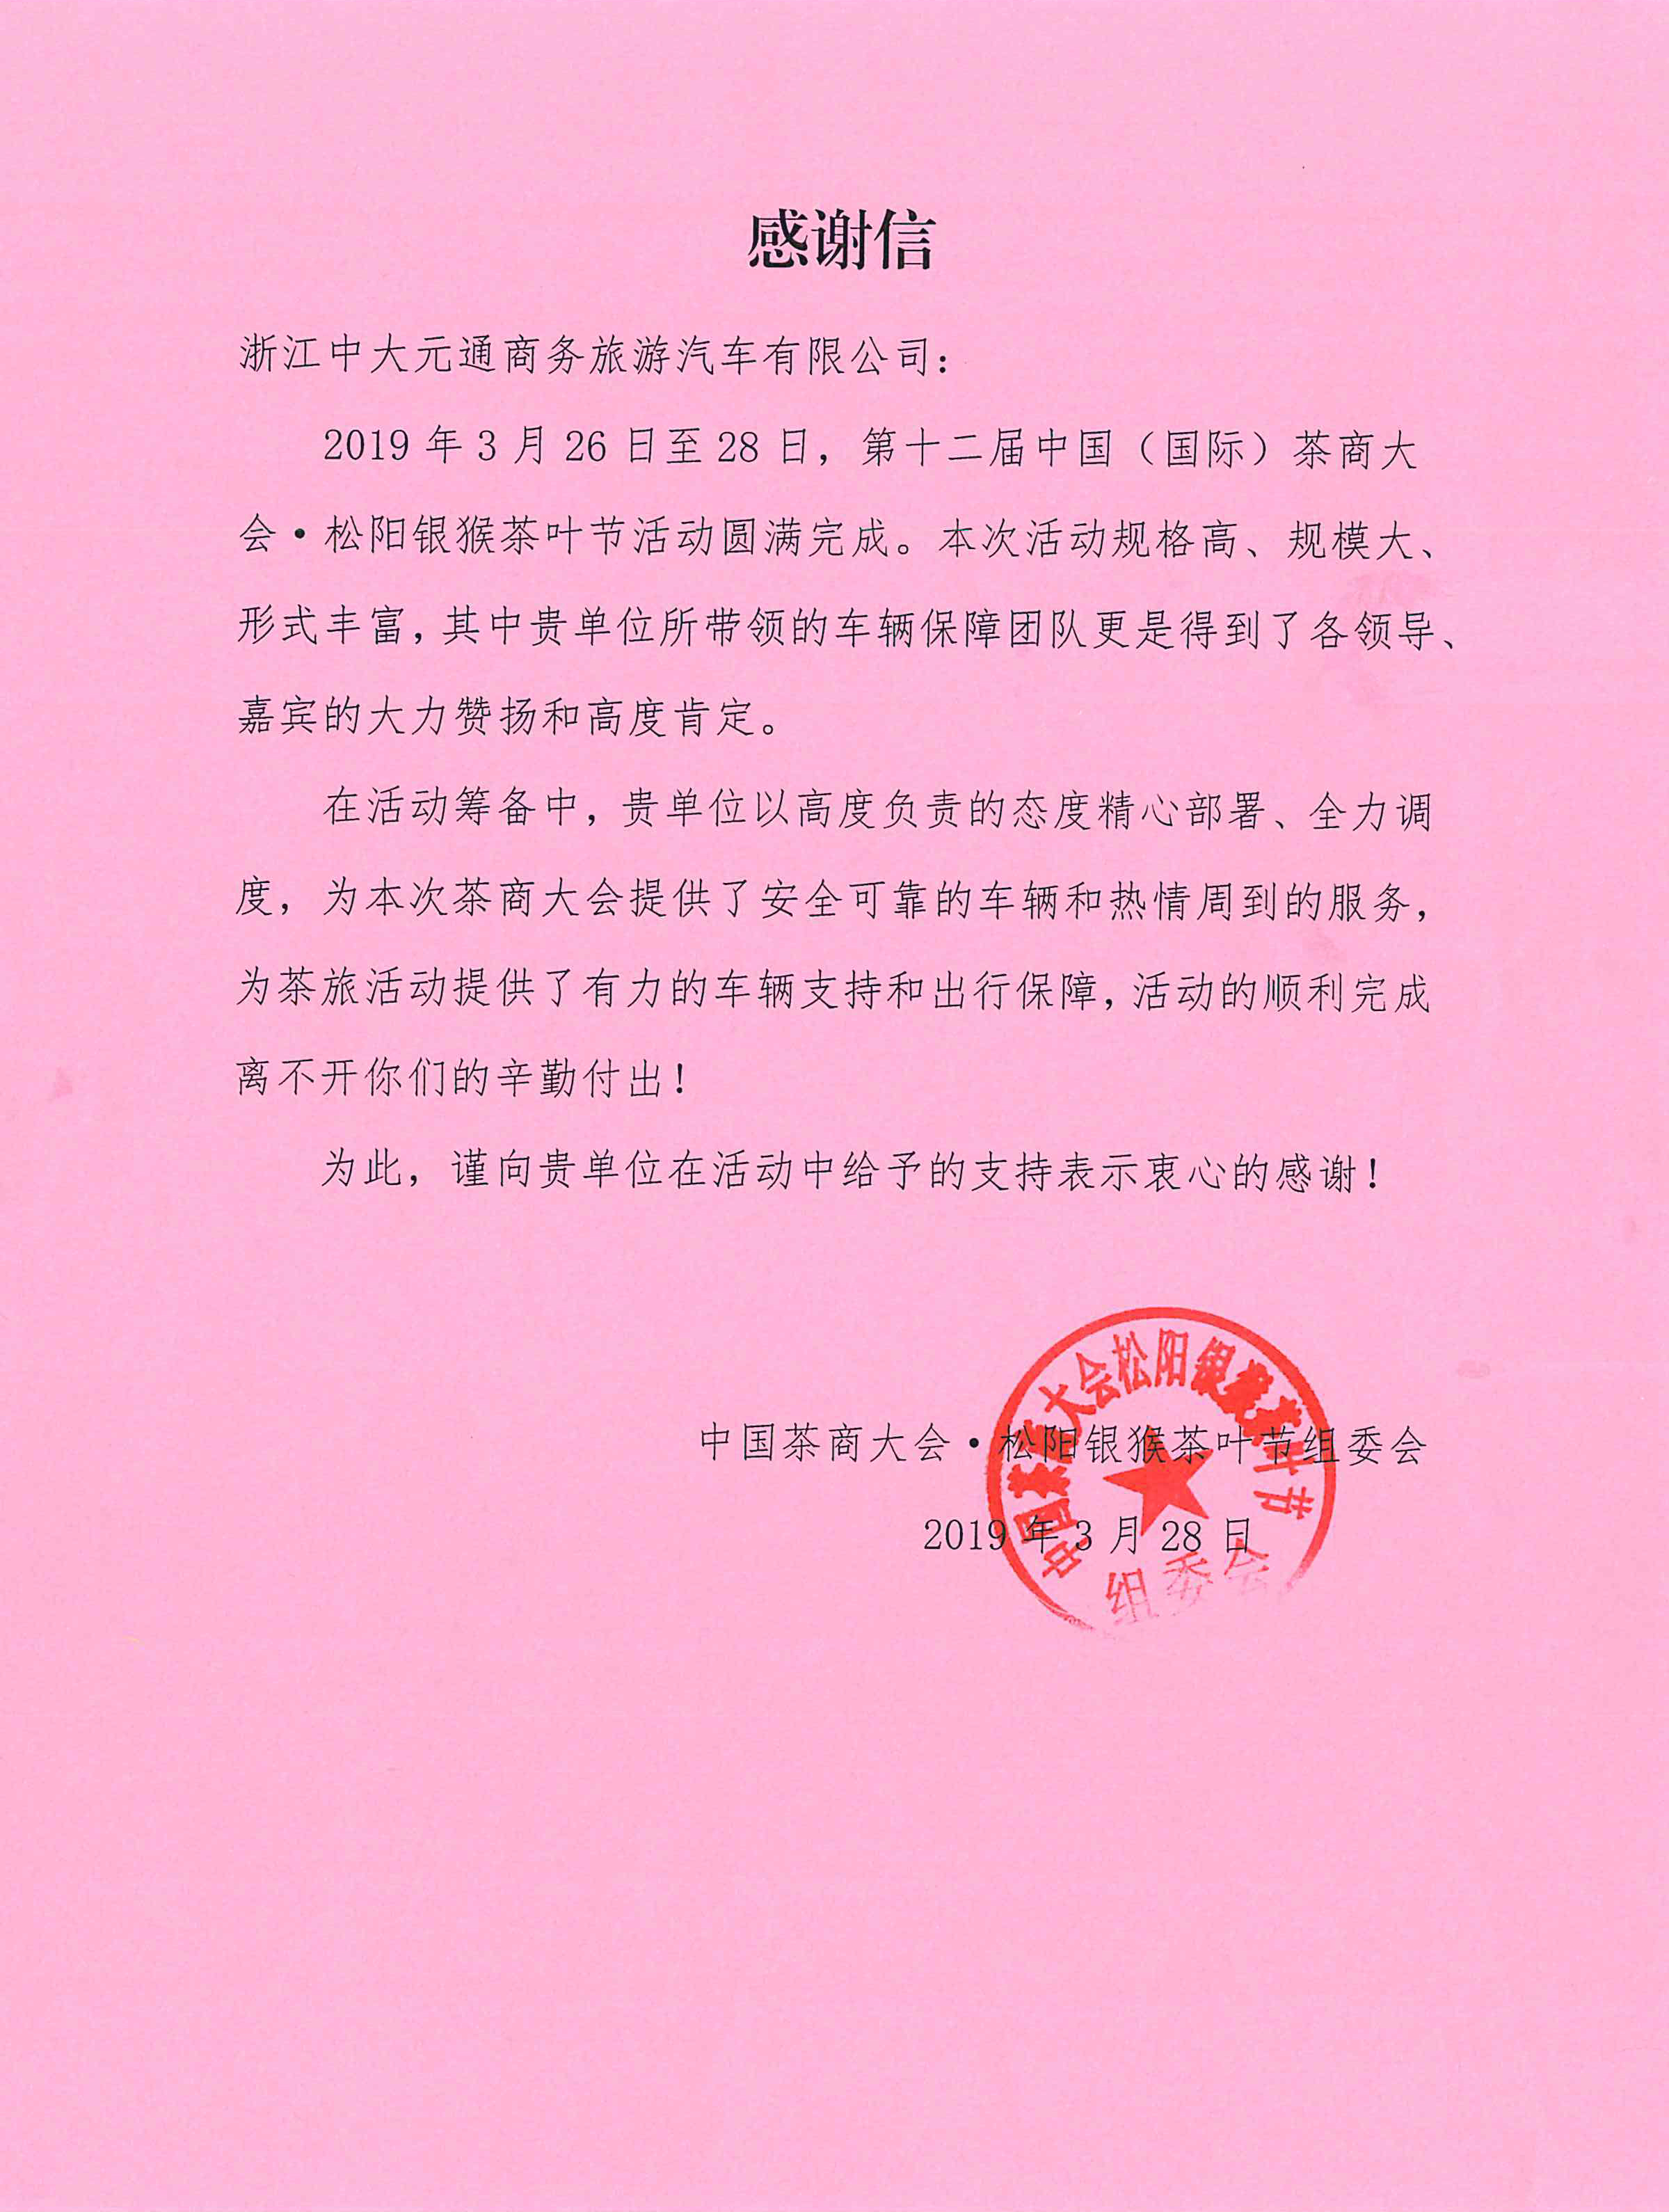 2019.3.28中国茶商大会松阳银猴茶叶节感谢信.jpg